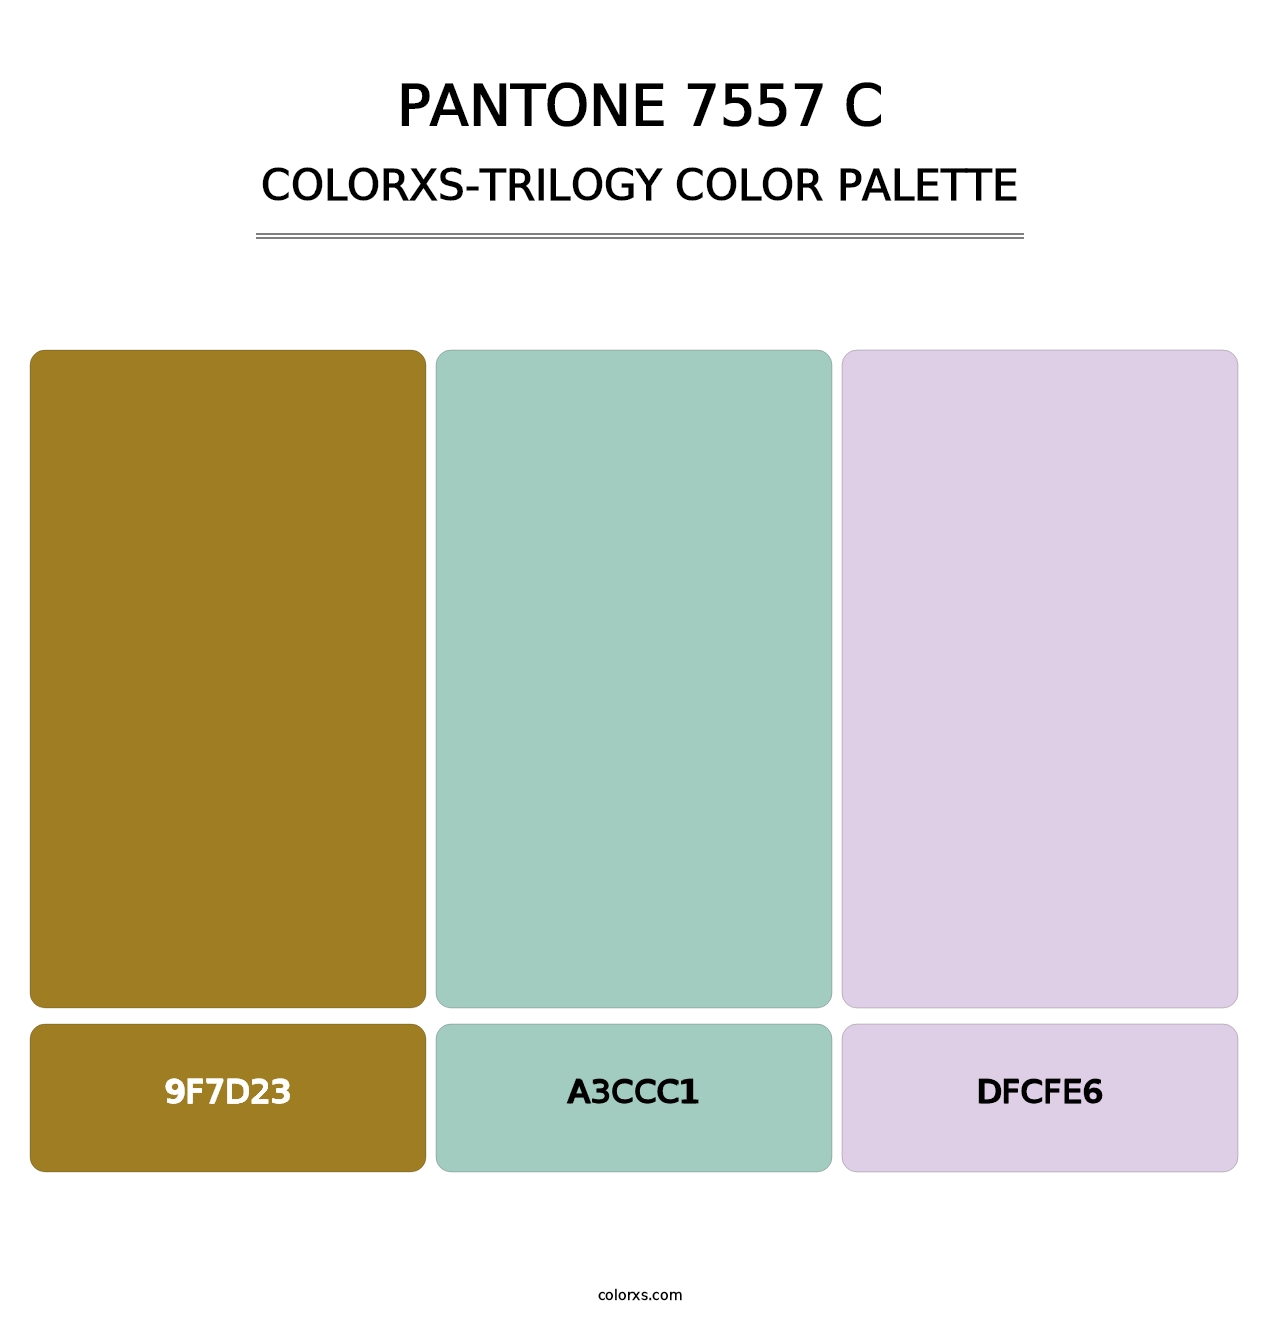 PANTONE 7557 C - Colorxs Trilogy Palette